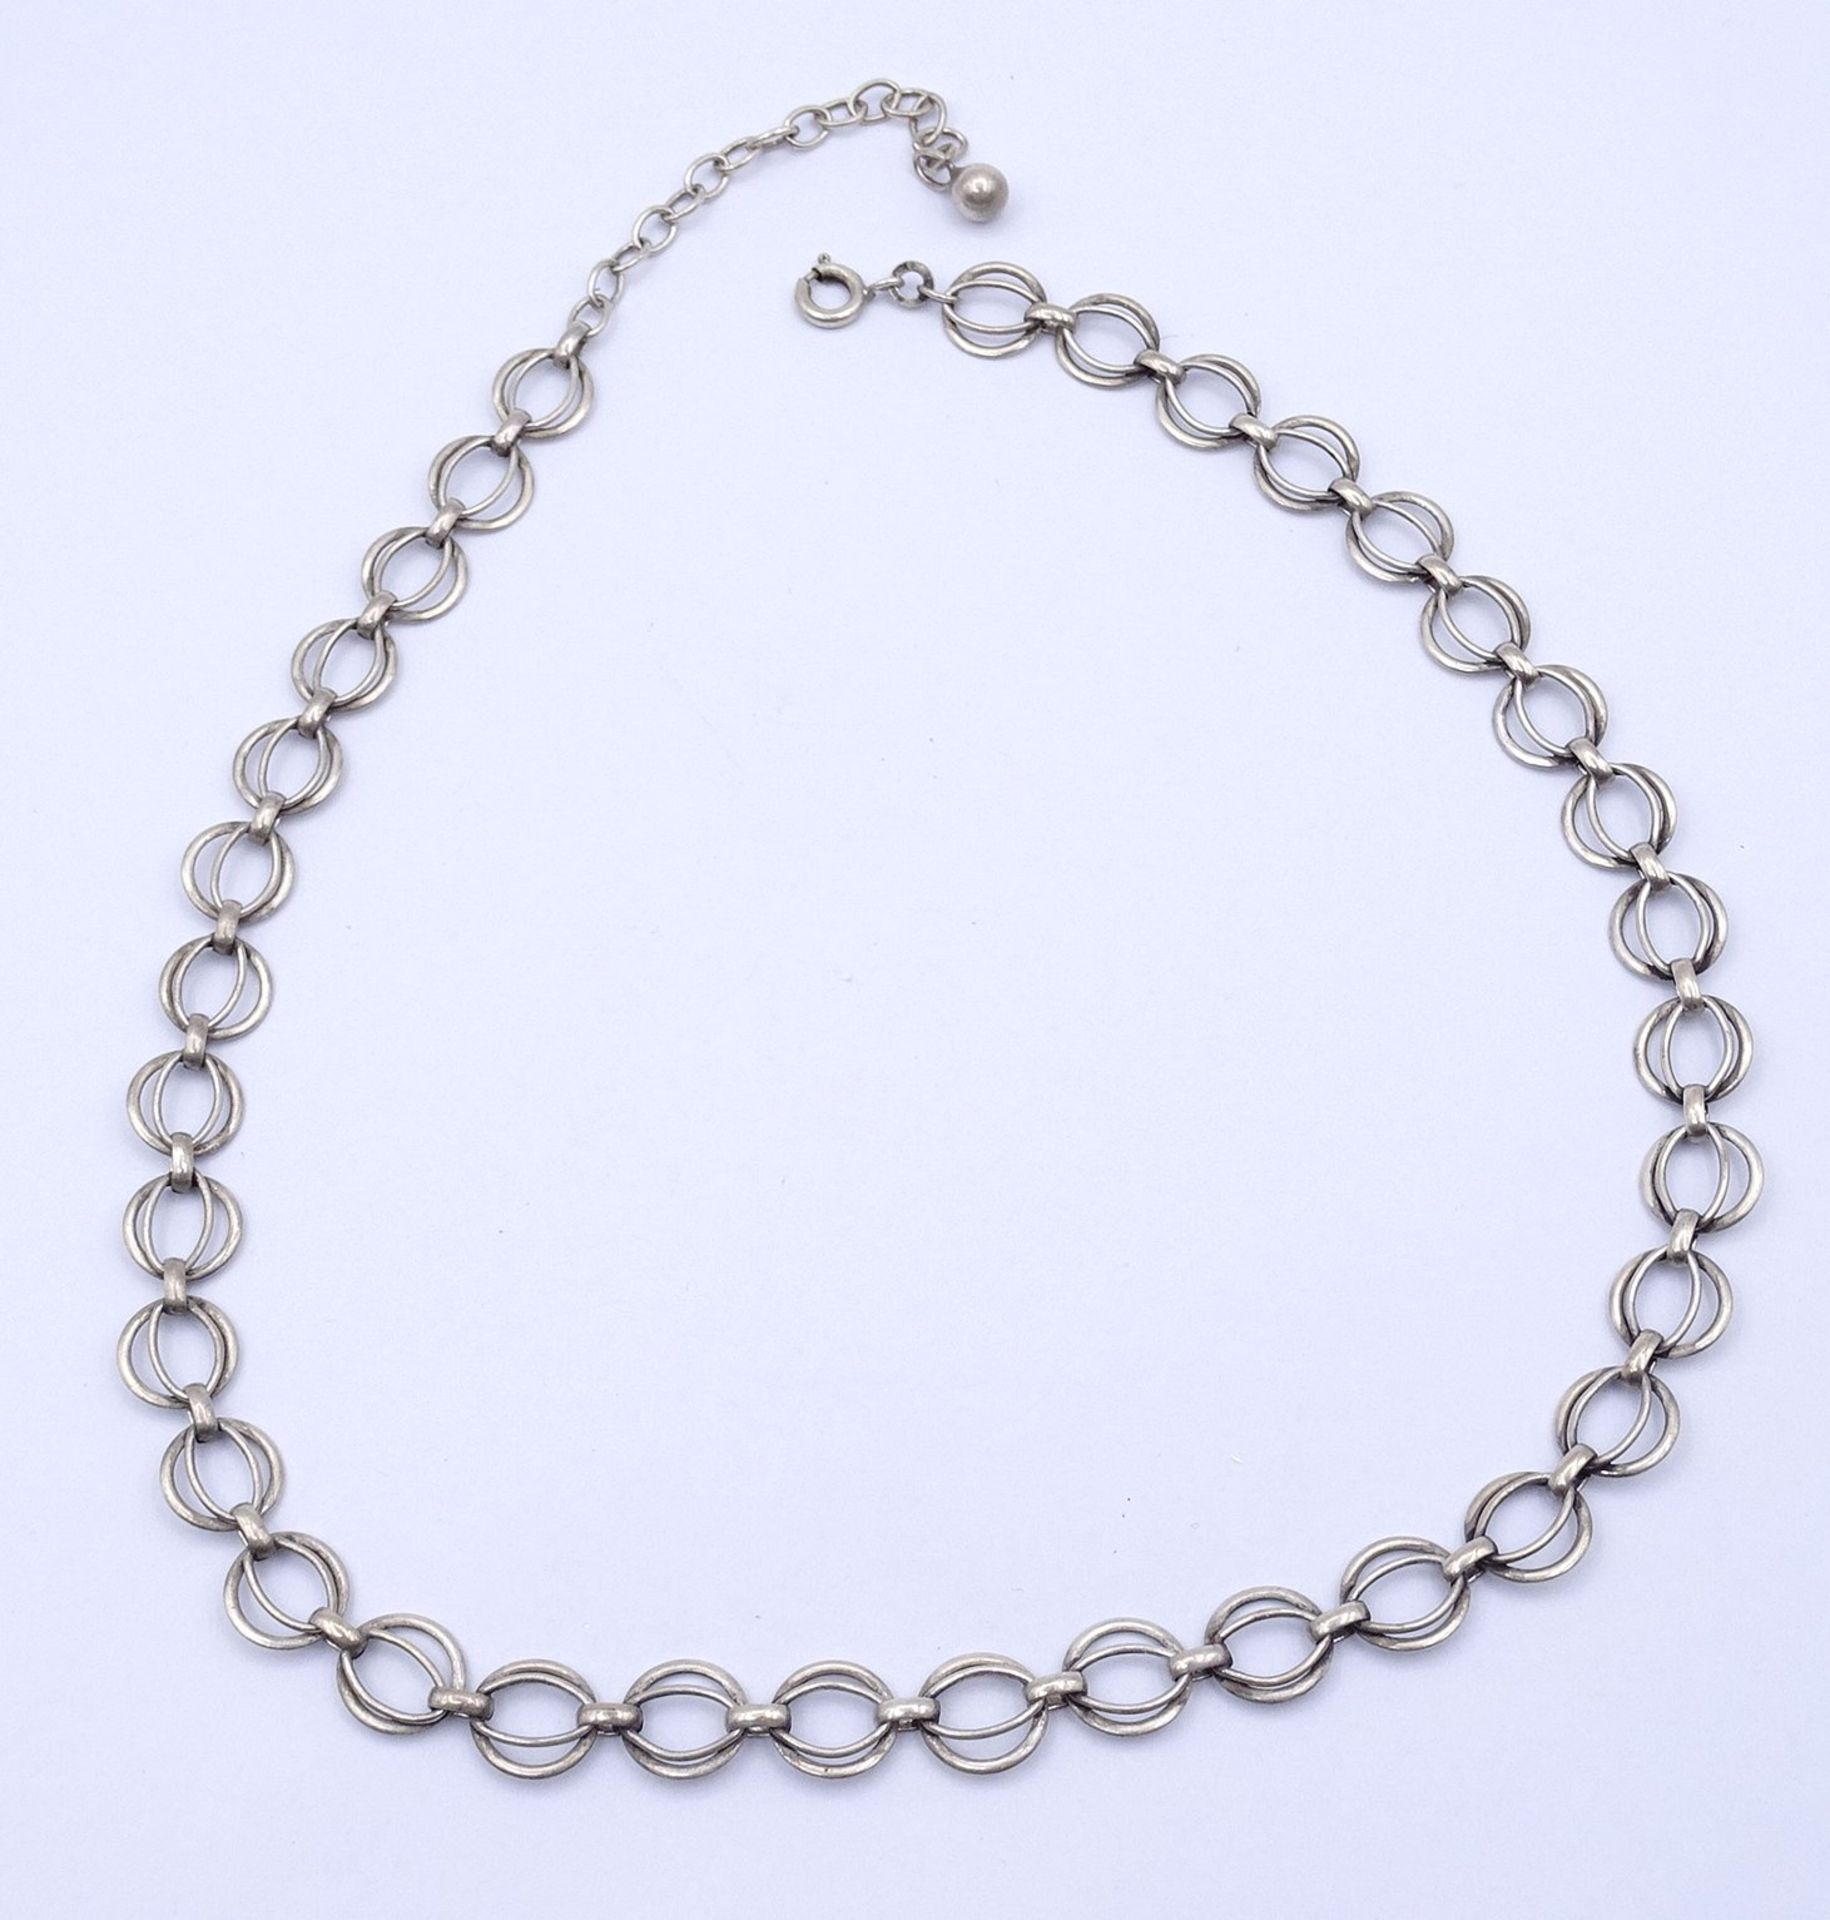 Halskette, Silber 0.800, L. 40-46cm, 15g.